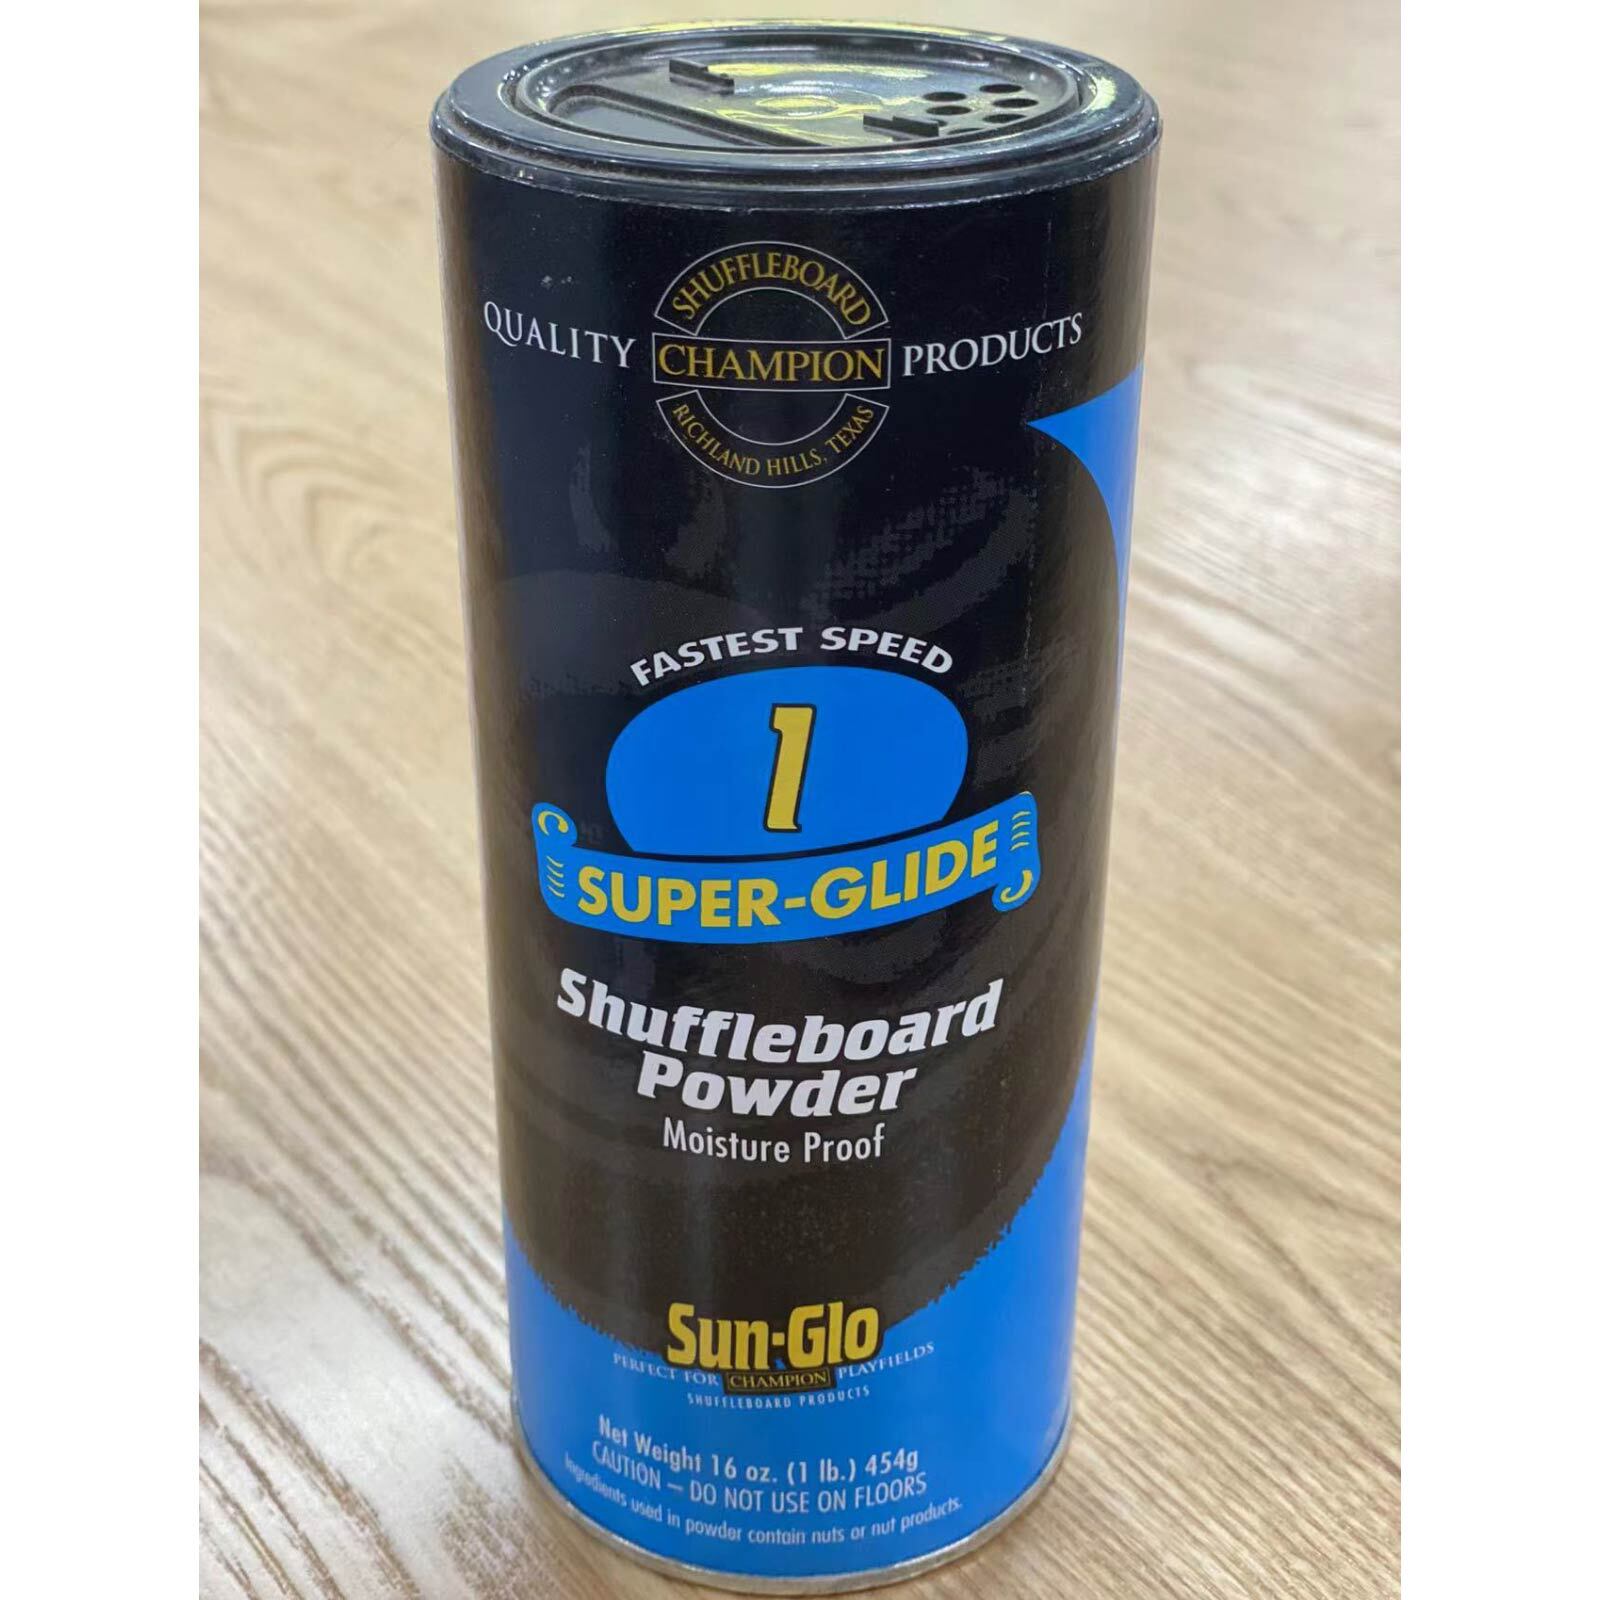 Sun-Glo speed 1 shuffleboard powder